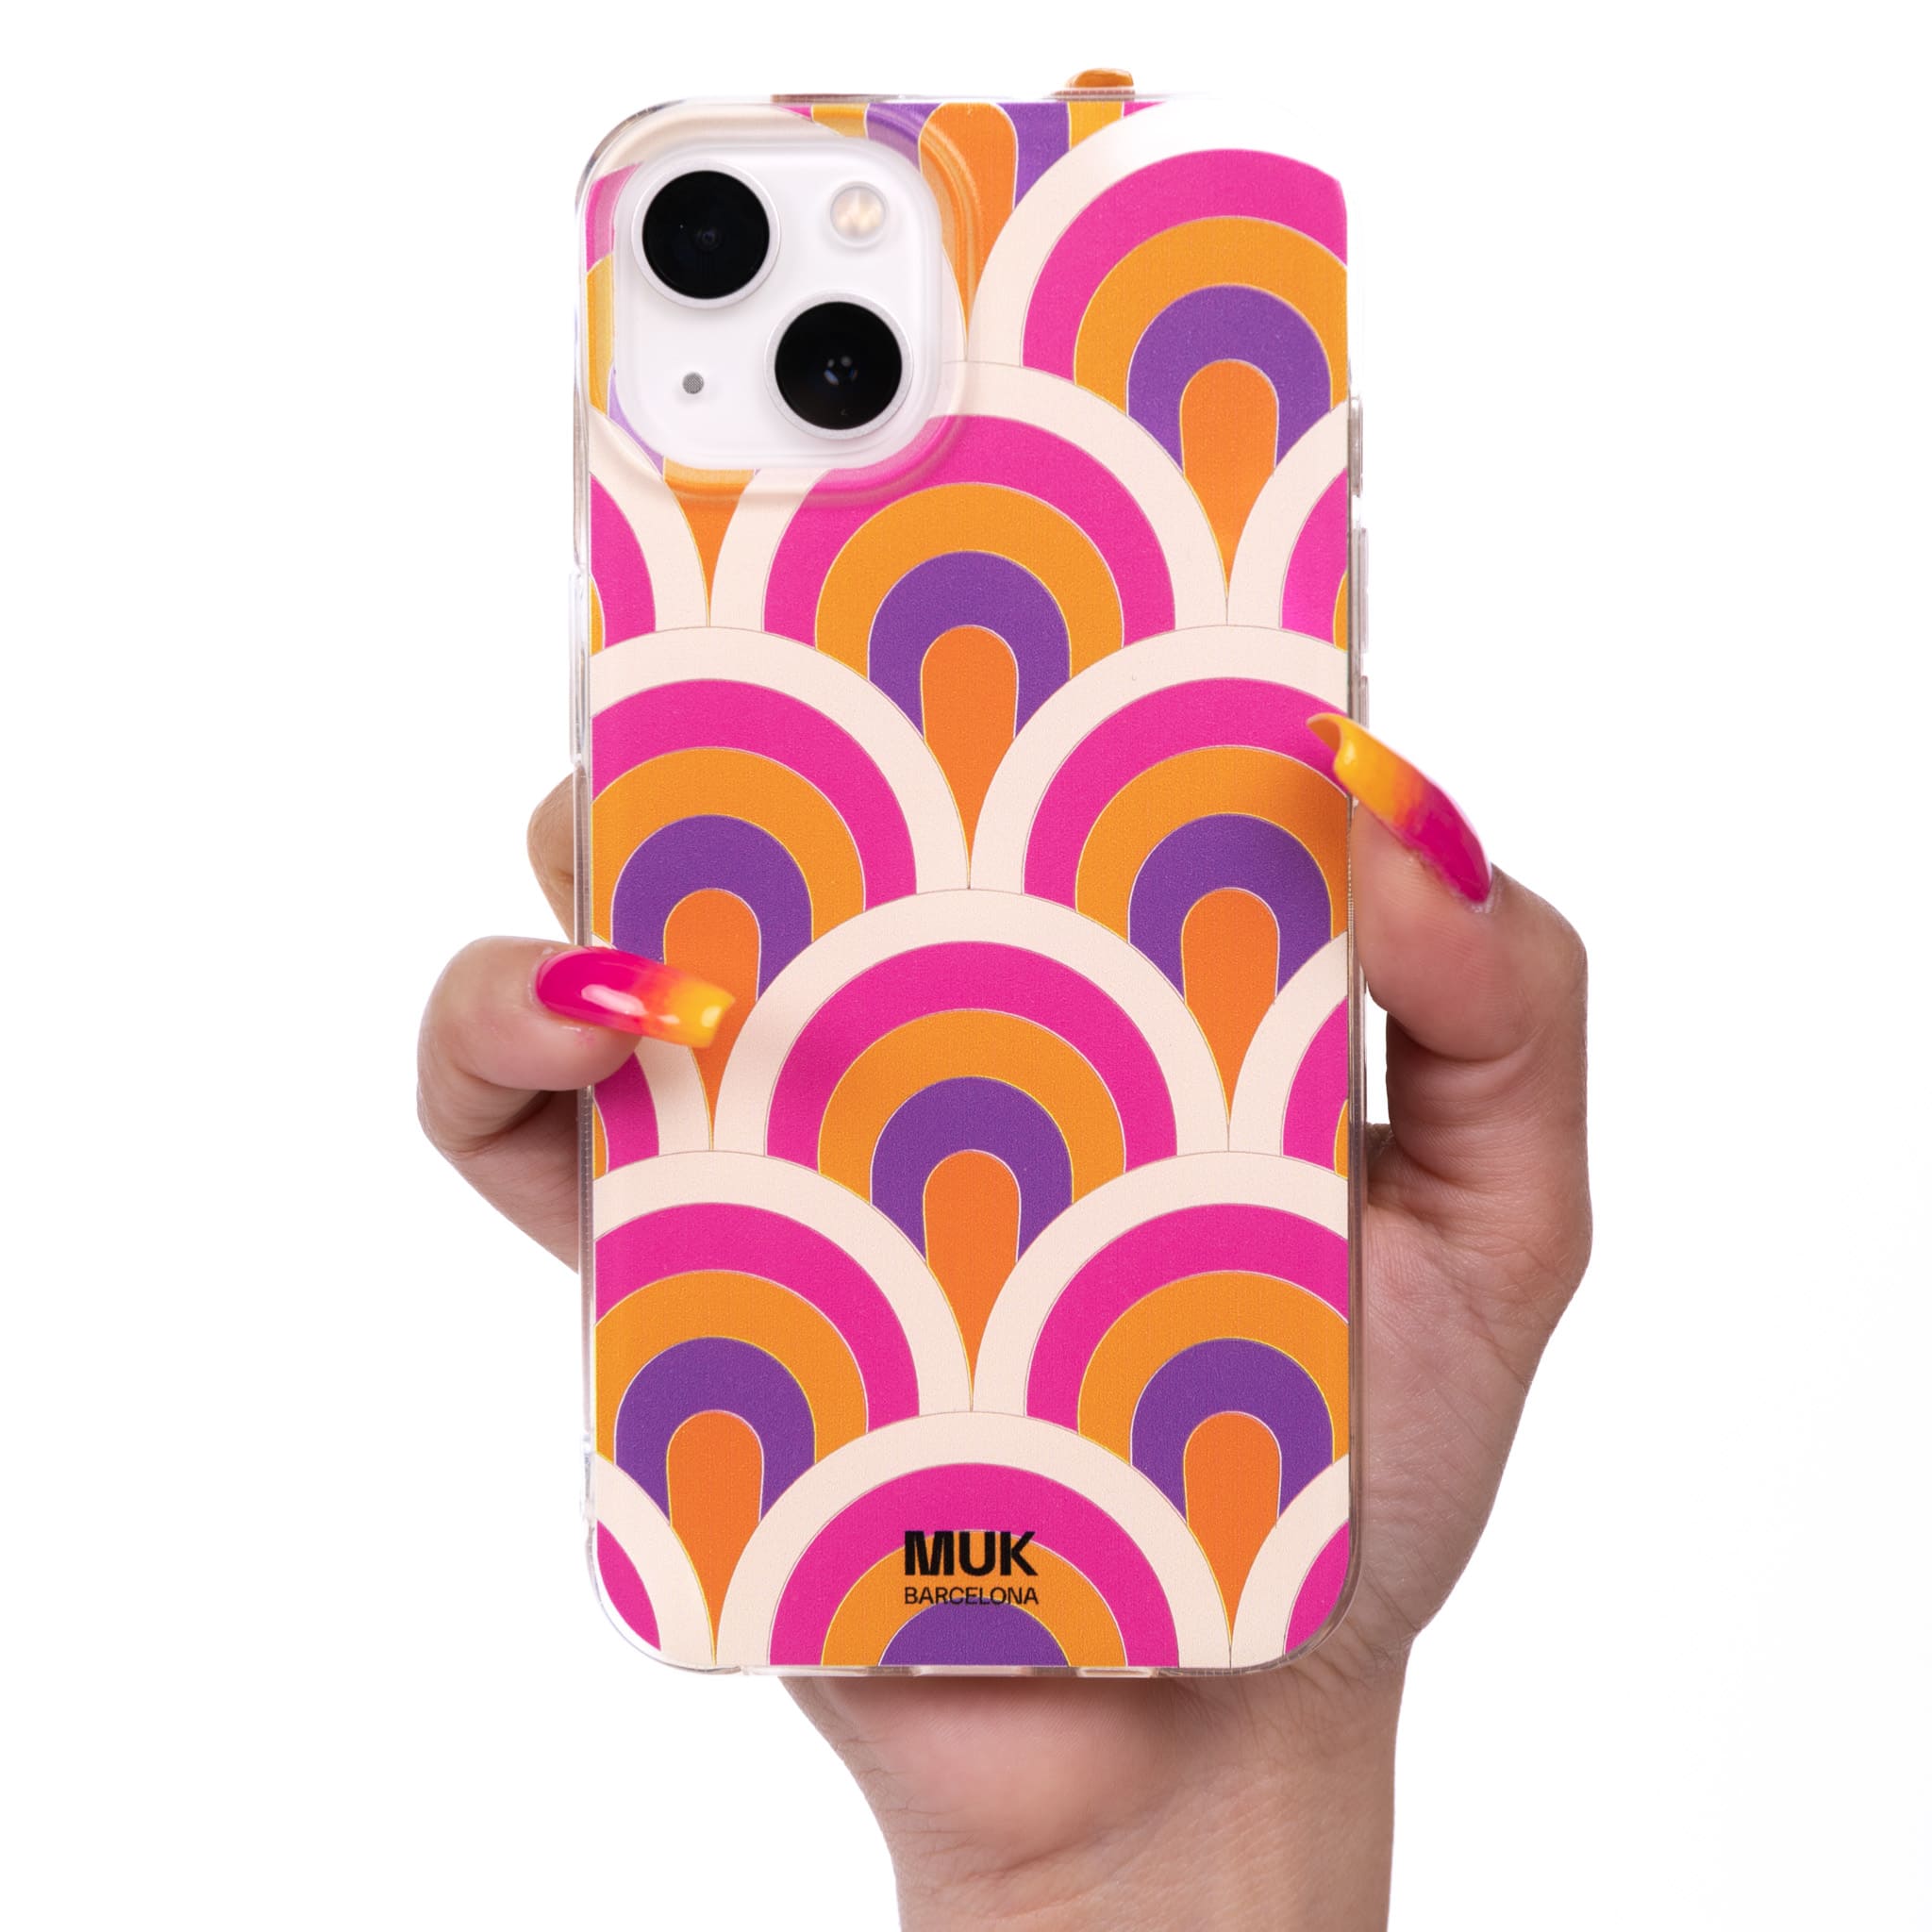 Funda de móvil transparente con formas geométricas de semicírculo lila, naranja, rosa y blanco.
